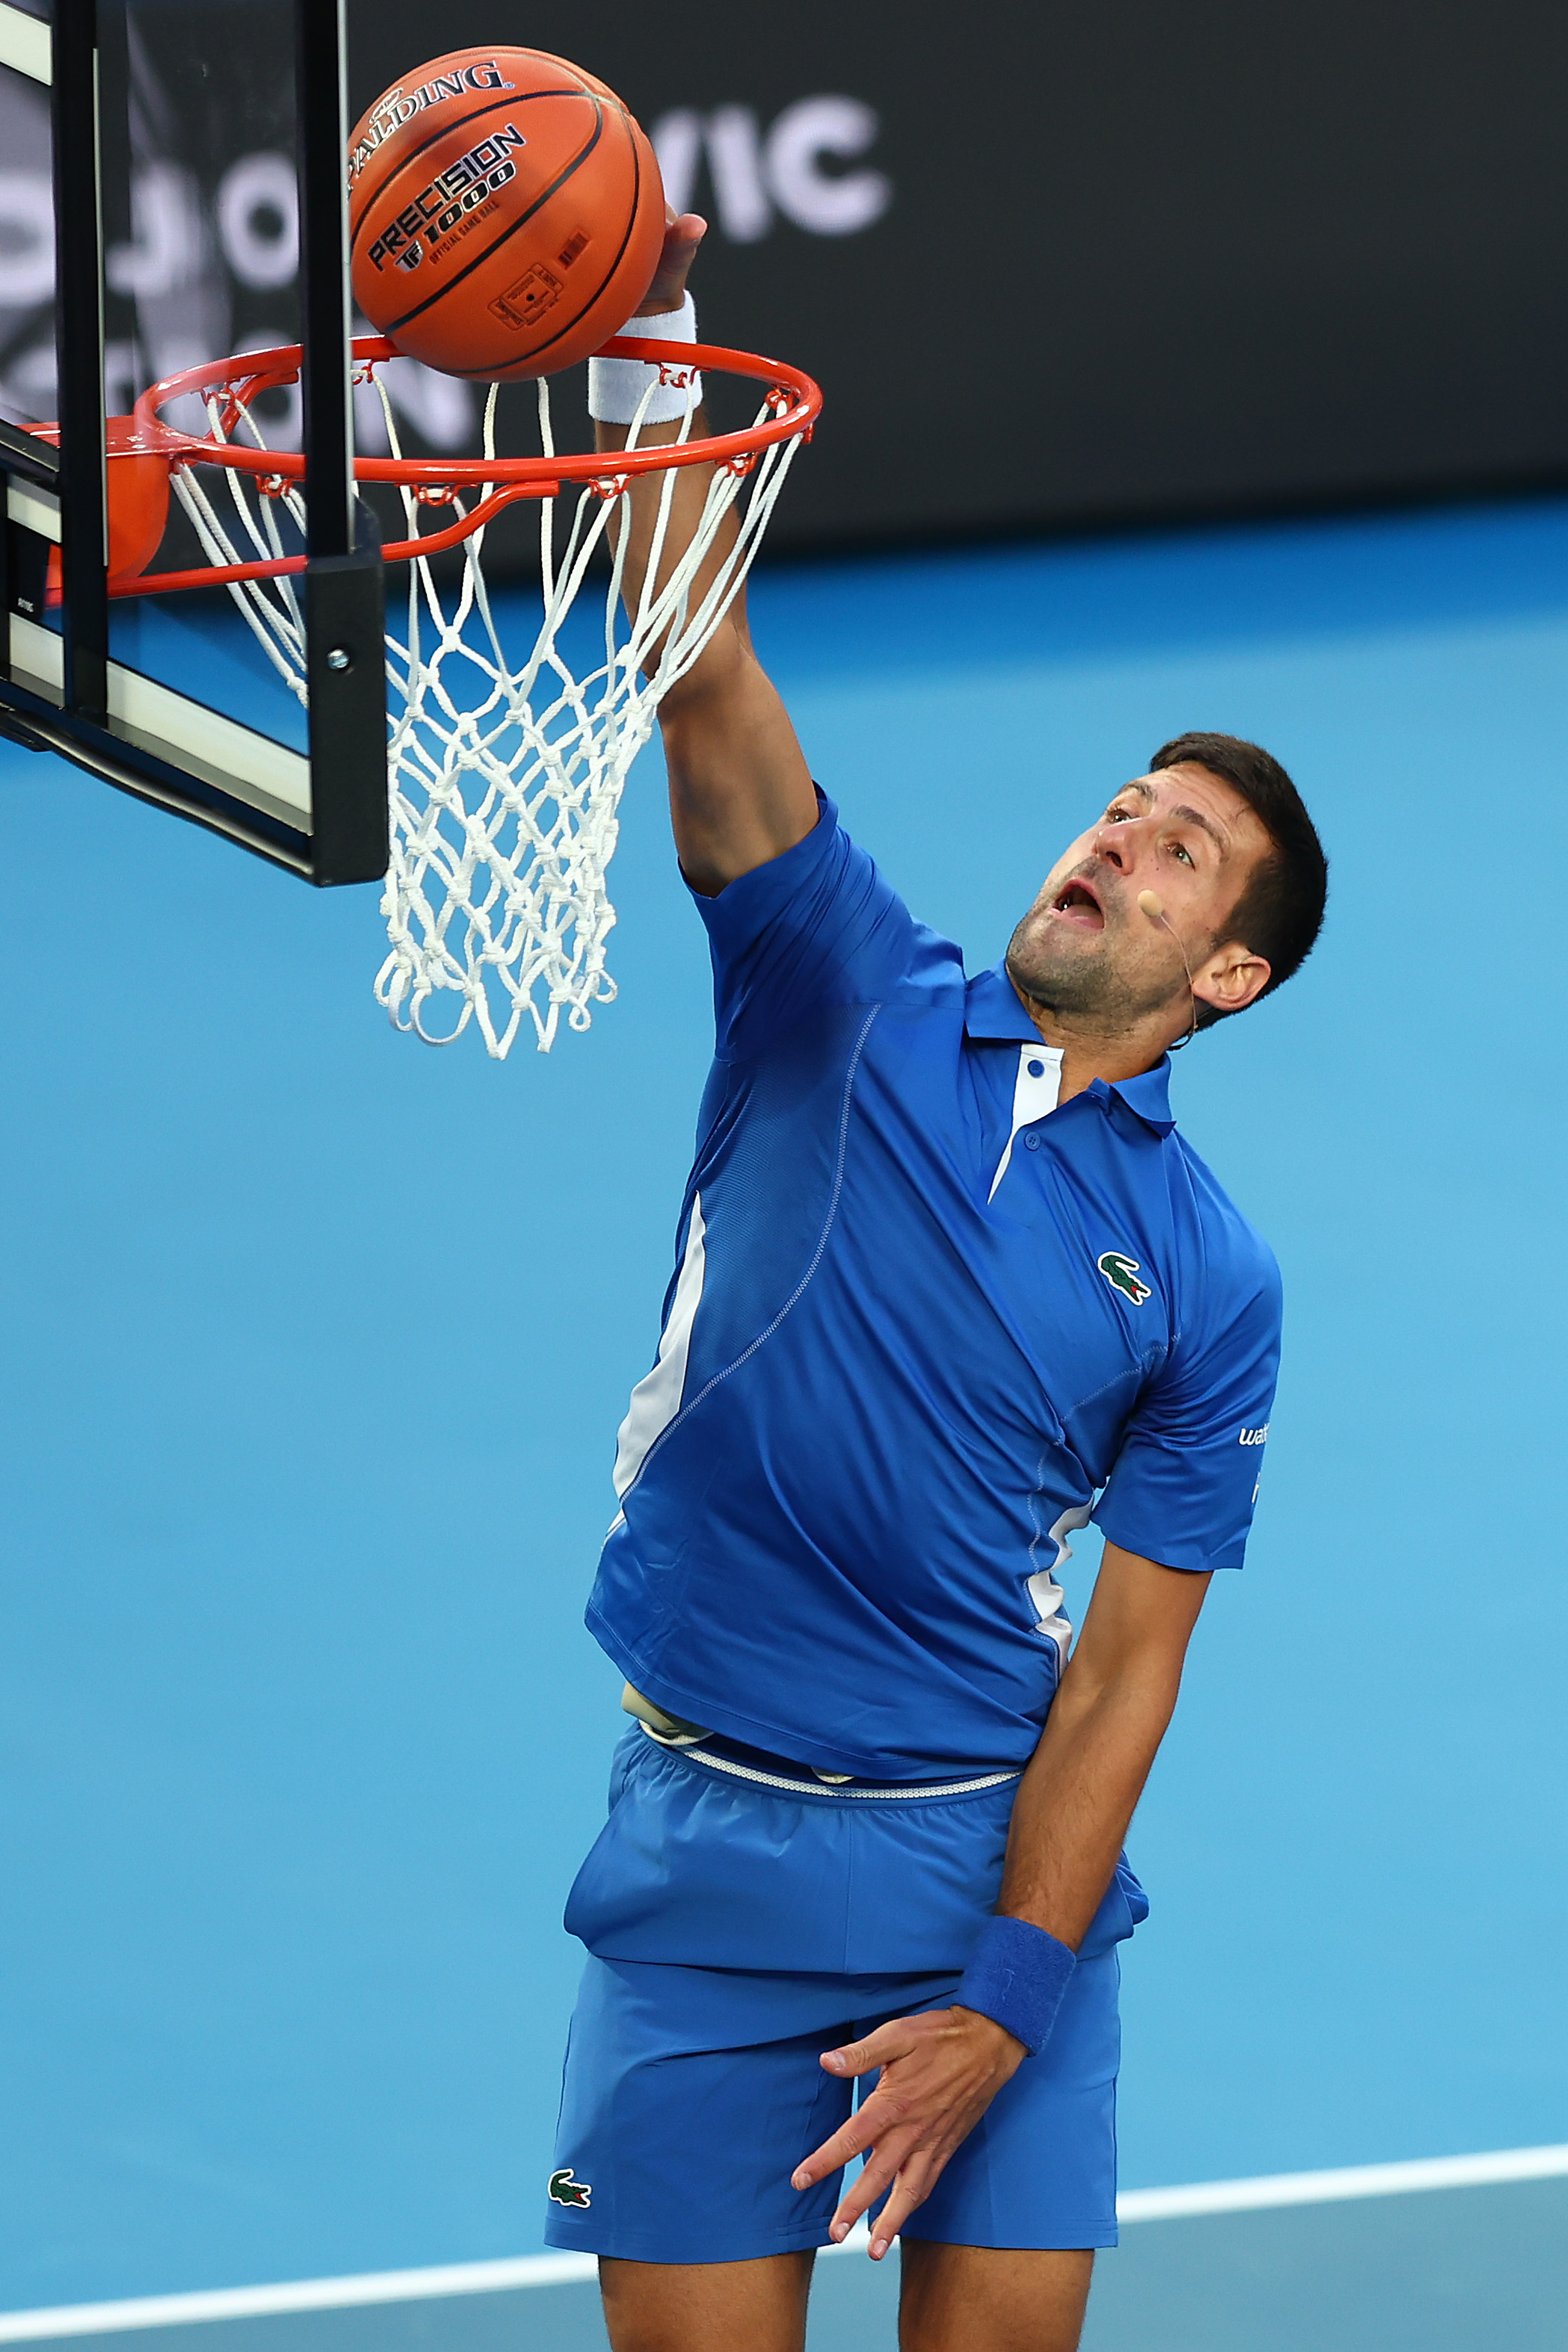 Djokovic schaffte es, vor der Menge einen Slam Dunk zu landen